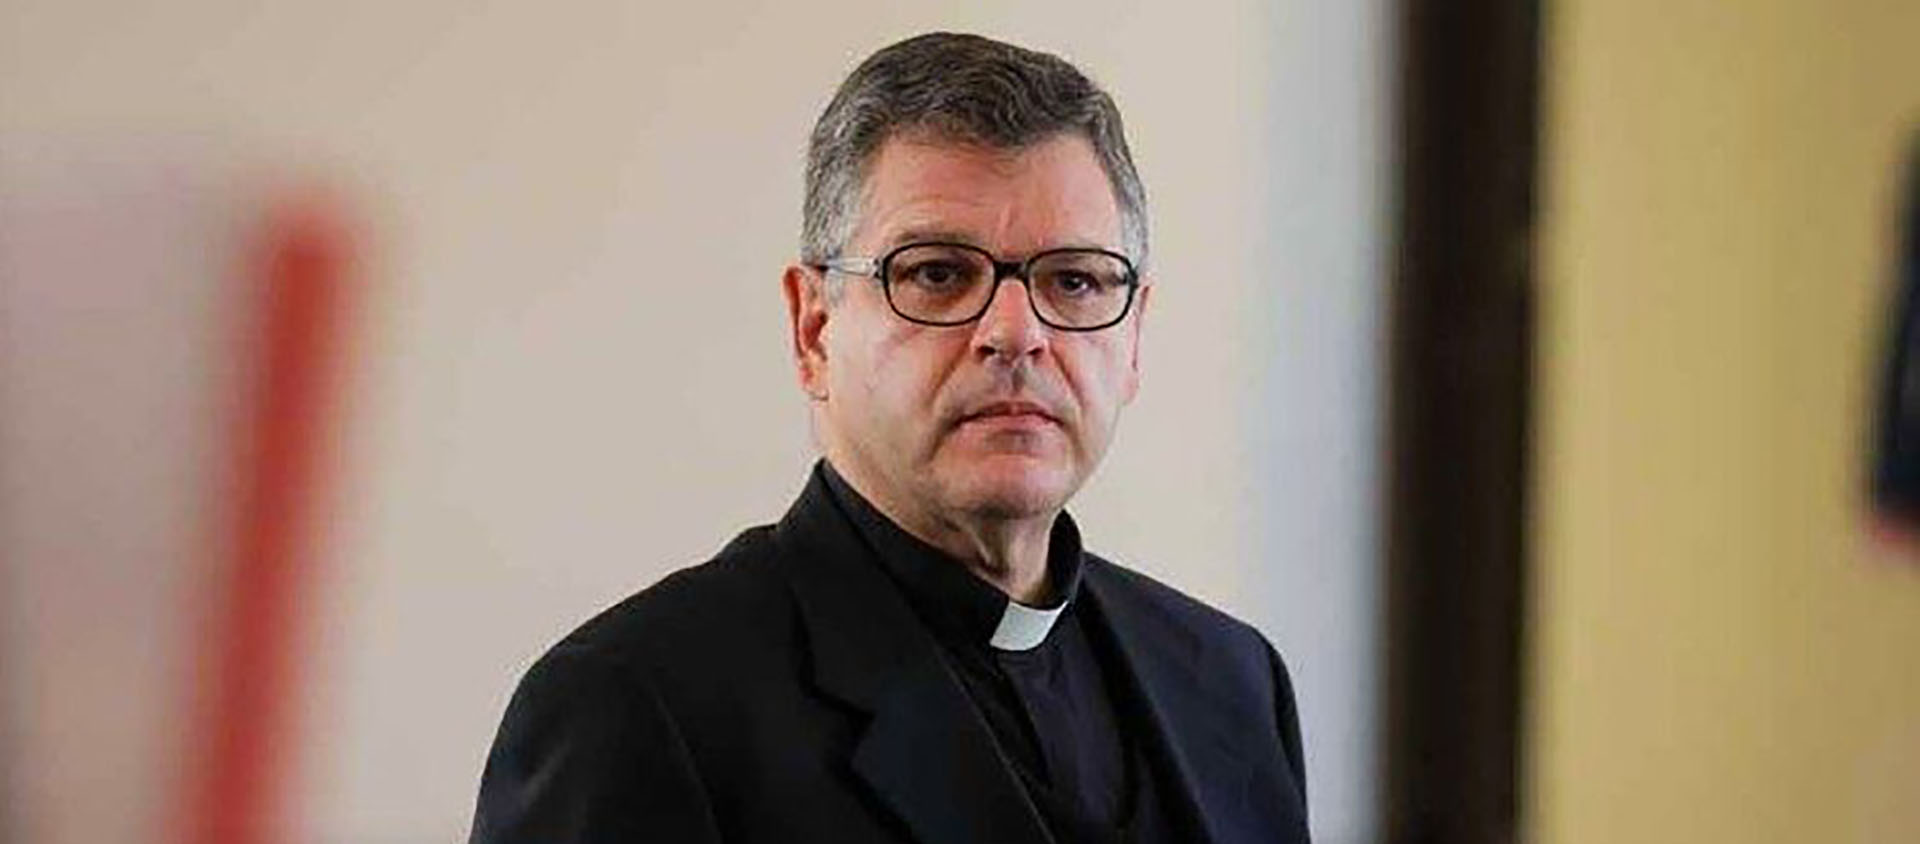 Mgr Marcos Pavan est confirmé à la tête du chœur de la Chapelle Sixtine | © Vatican Media